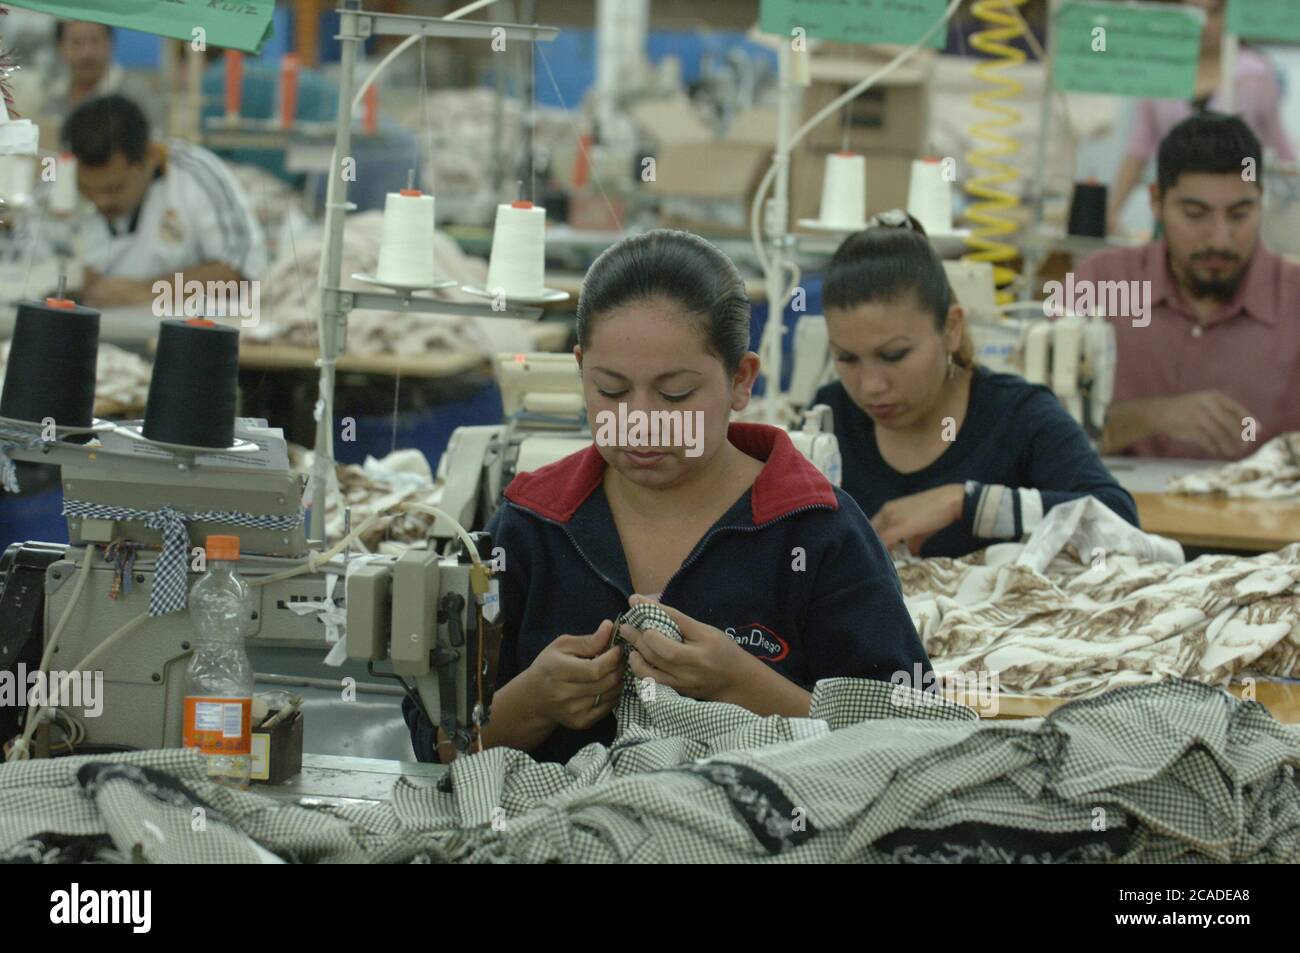 Matamoros, México Abril de 2006: El complejo de la fábrica de BonWorth,  fabricante de ropa, a través de la frontera de los Estados Unidos en México,  tiene 650 empleados que producen cerca